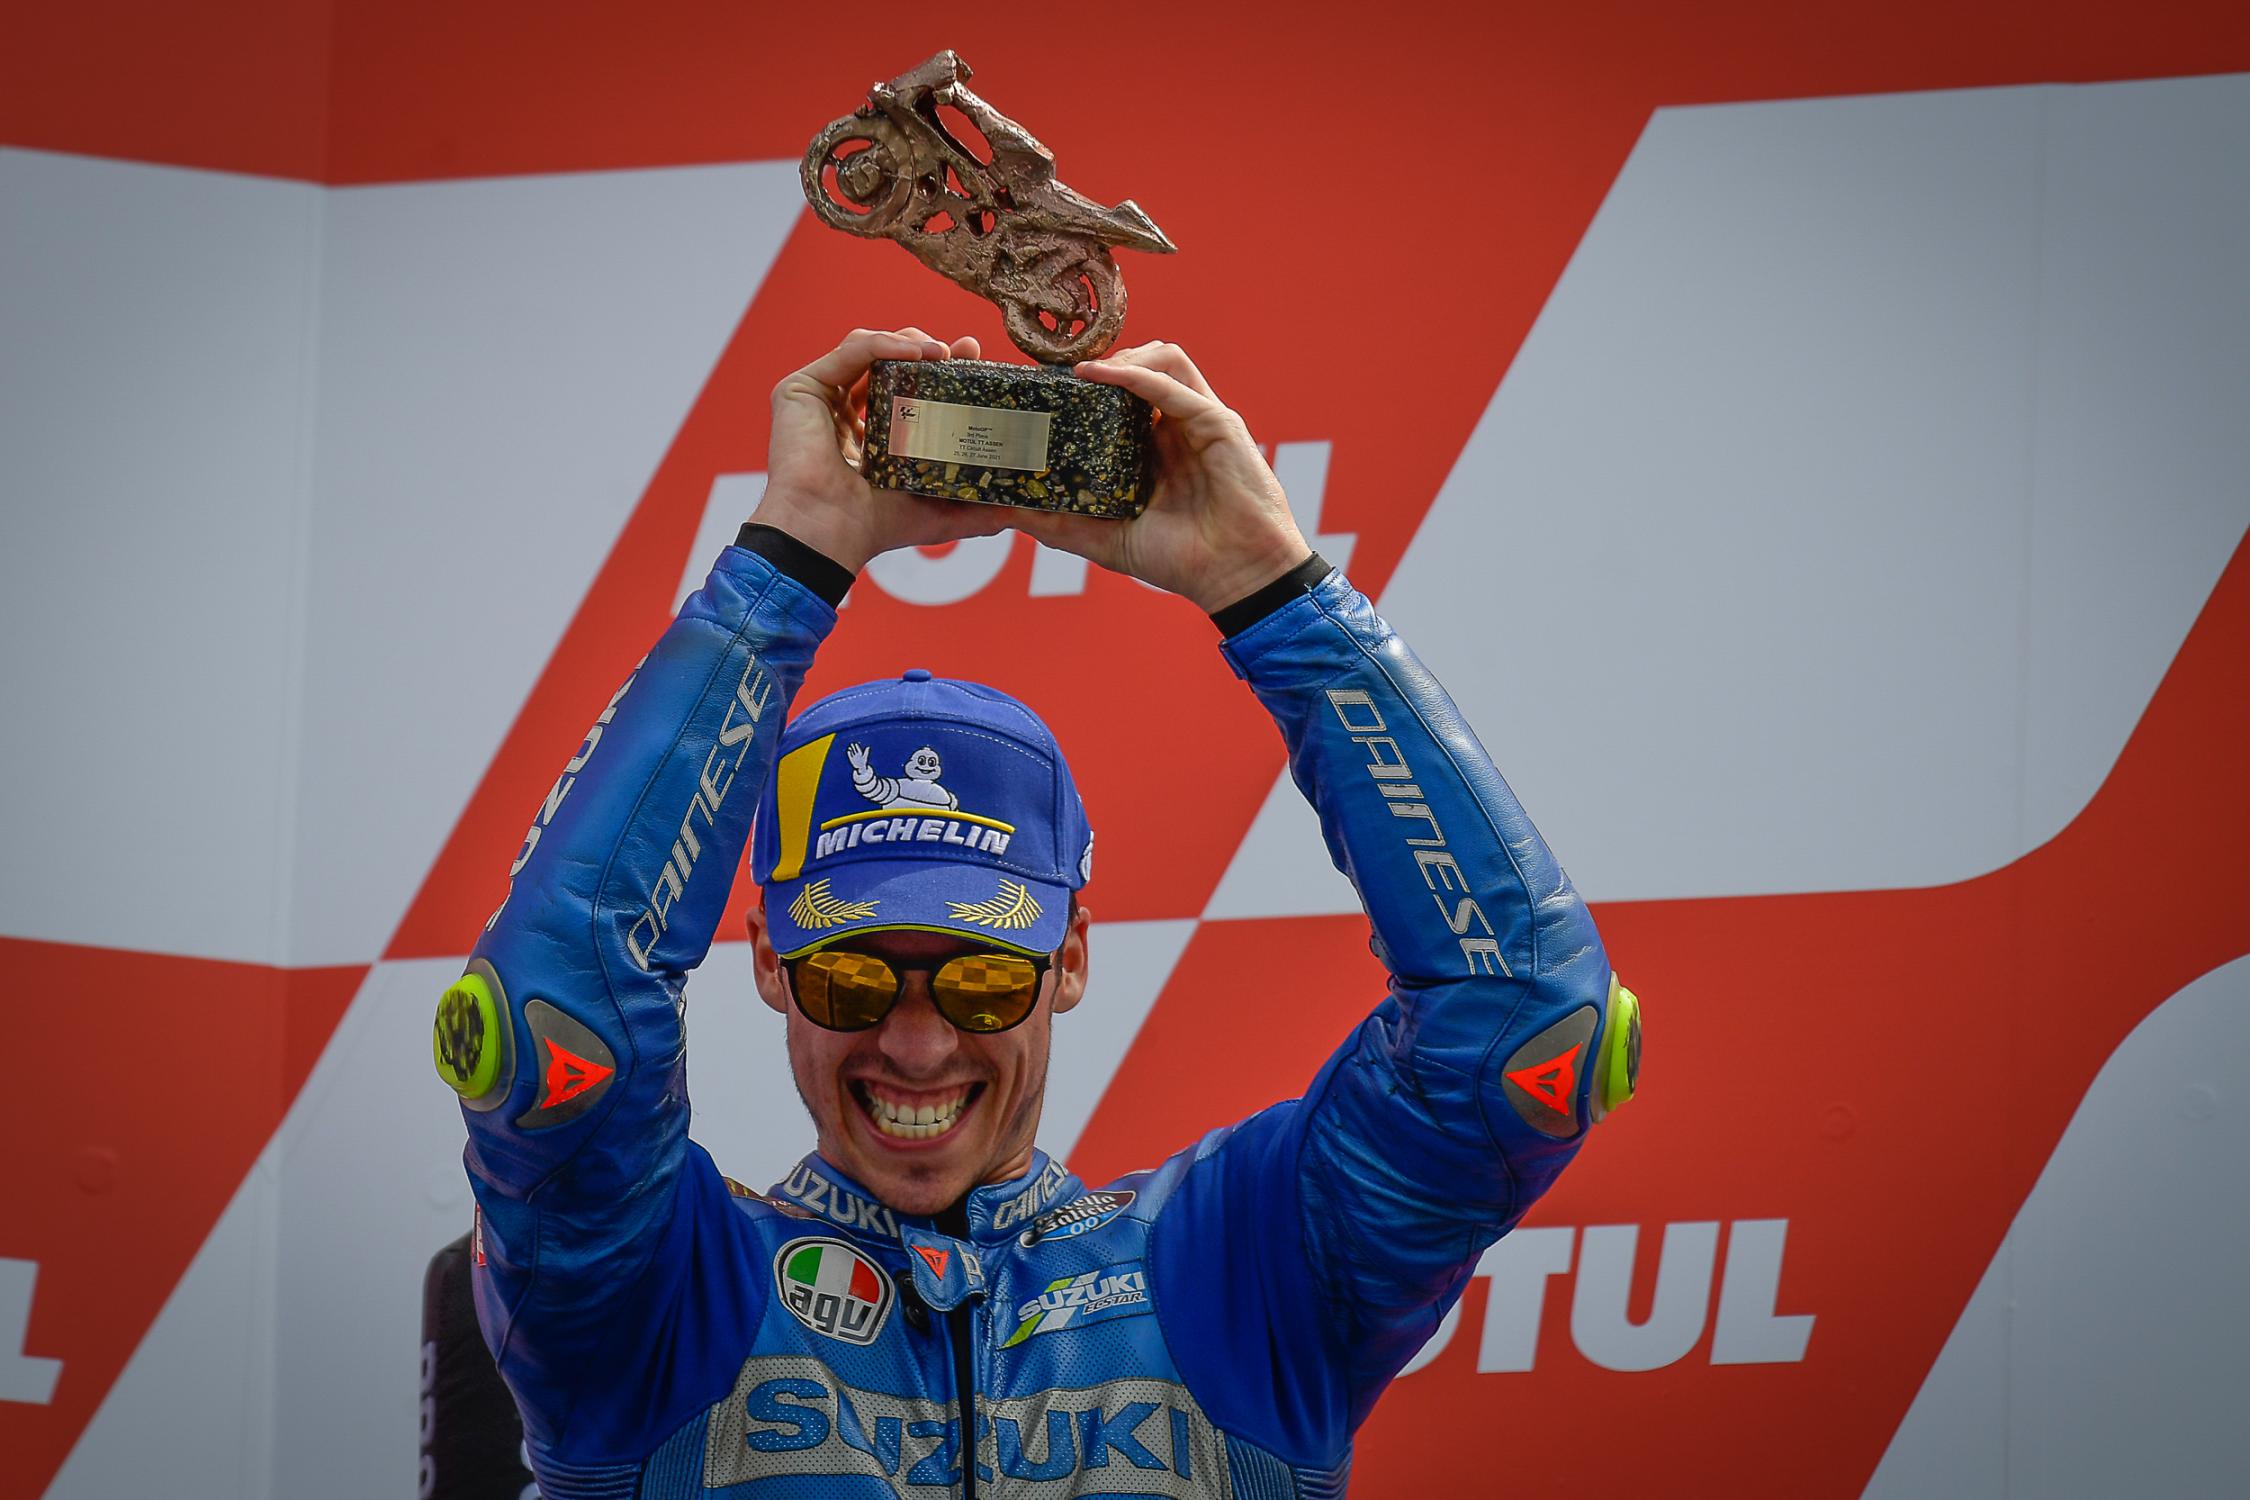 MotoGP 2021: Результаты Гран-При Ассена (Нидерланды 9 этап)